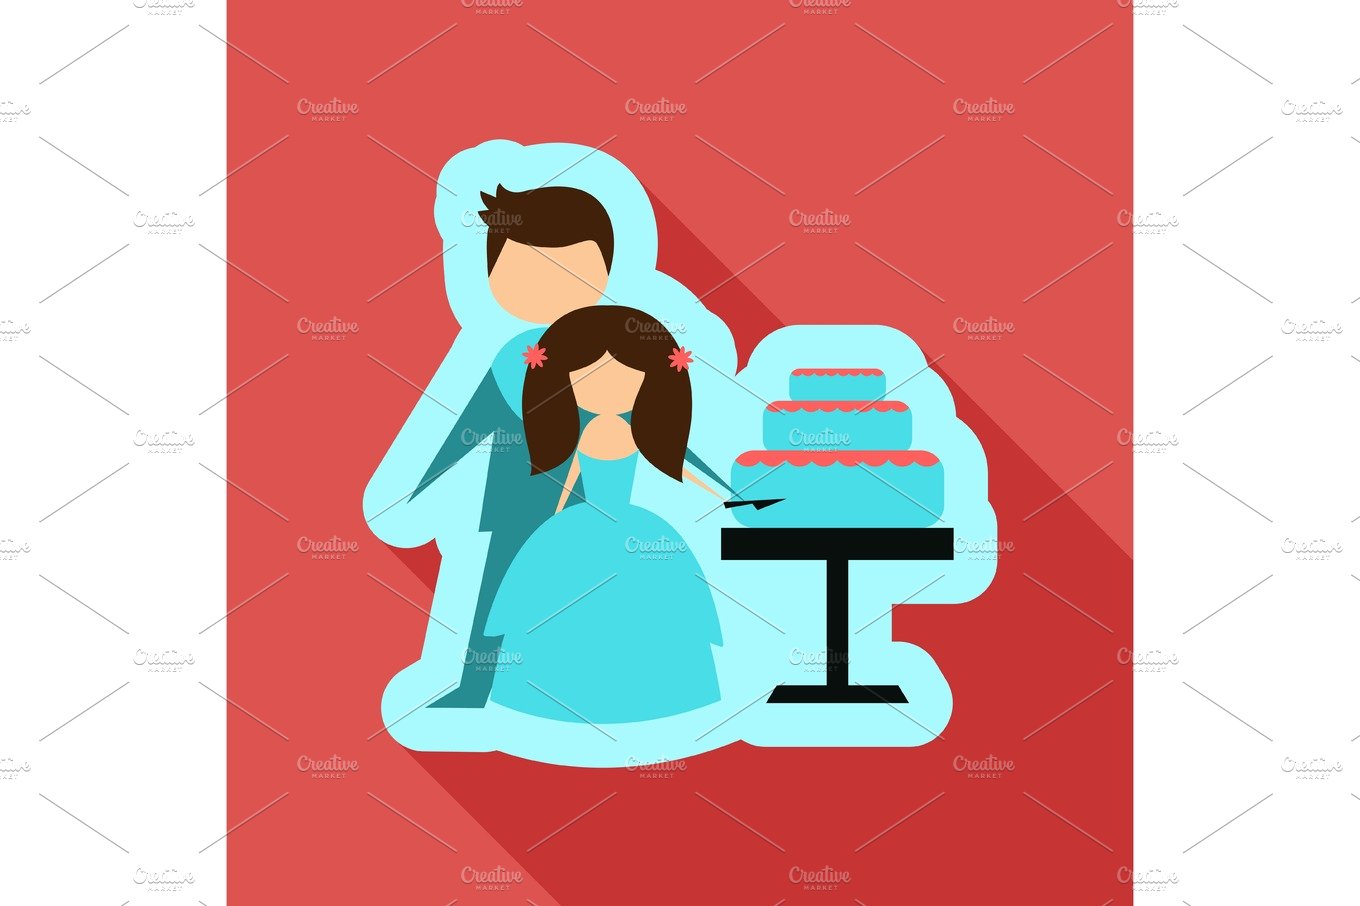 Newlyweds cut wedding cake cover image.